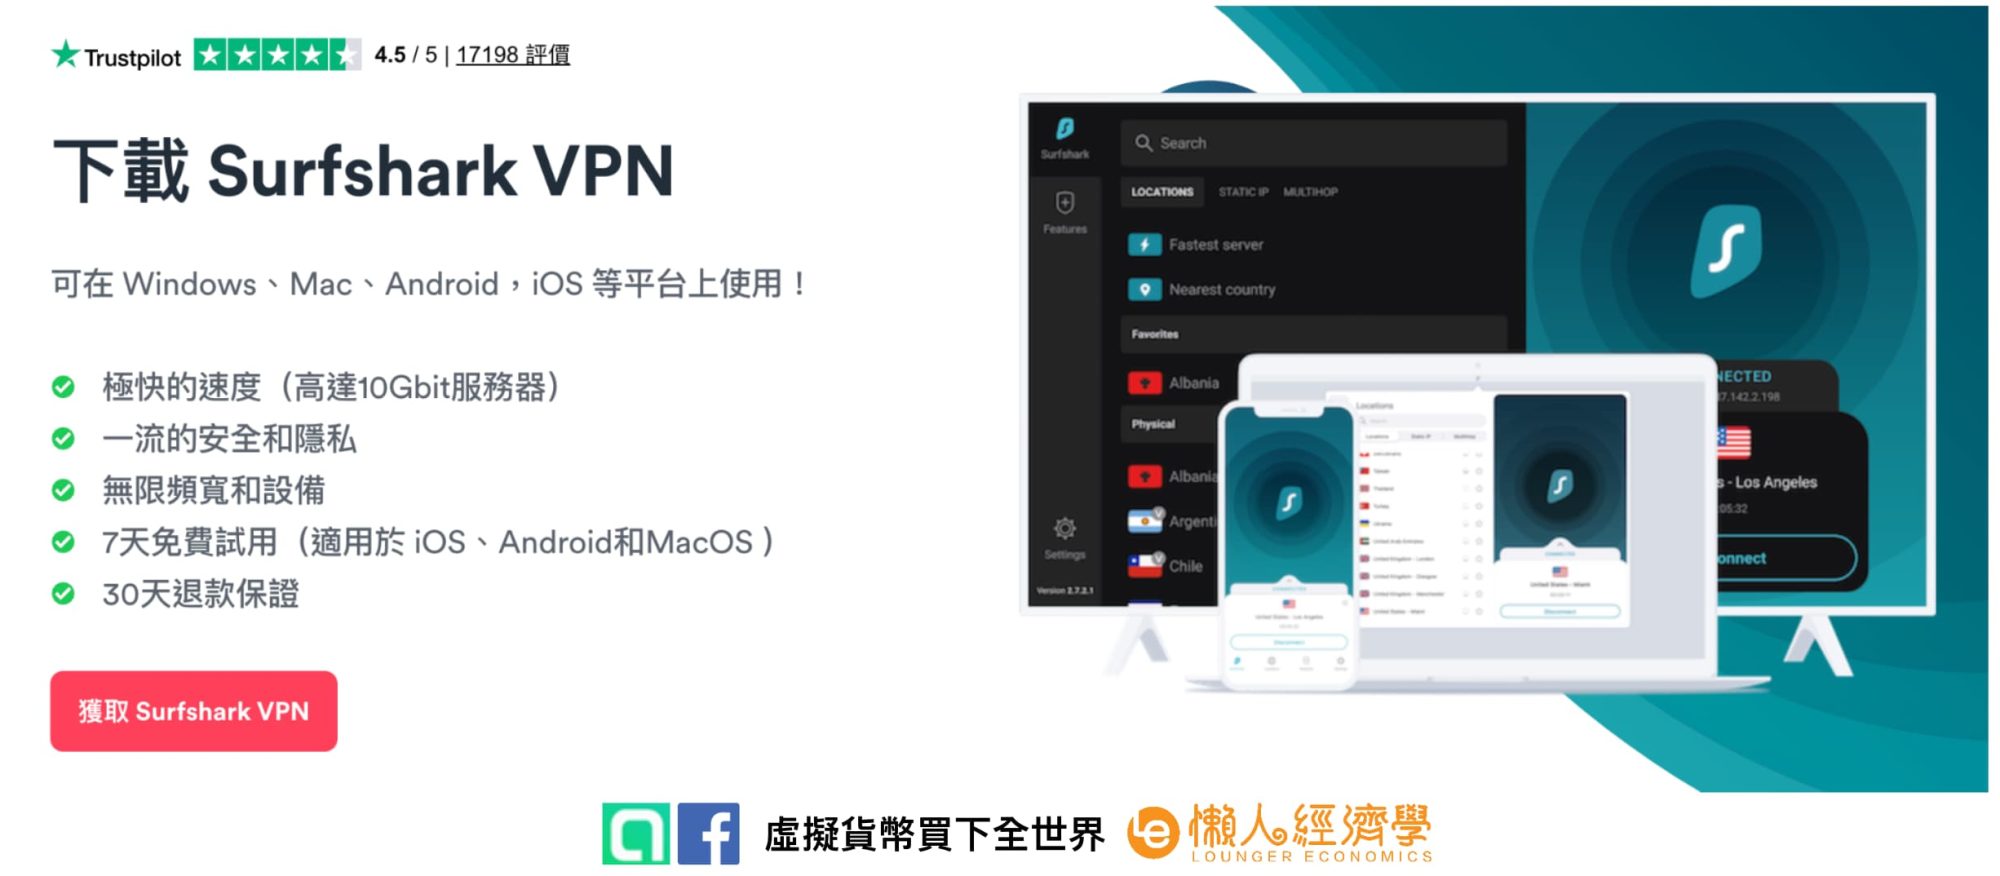 推薦台灣人使用 Surfshark VPN 嗎？